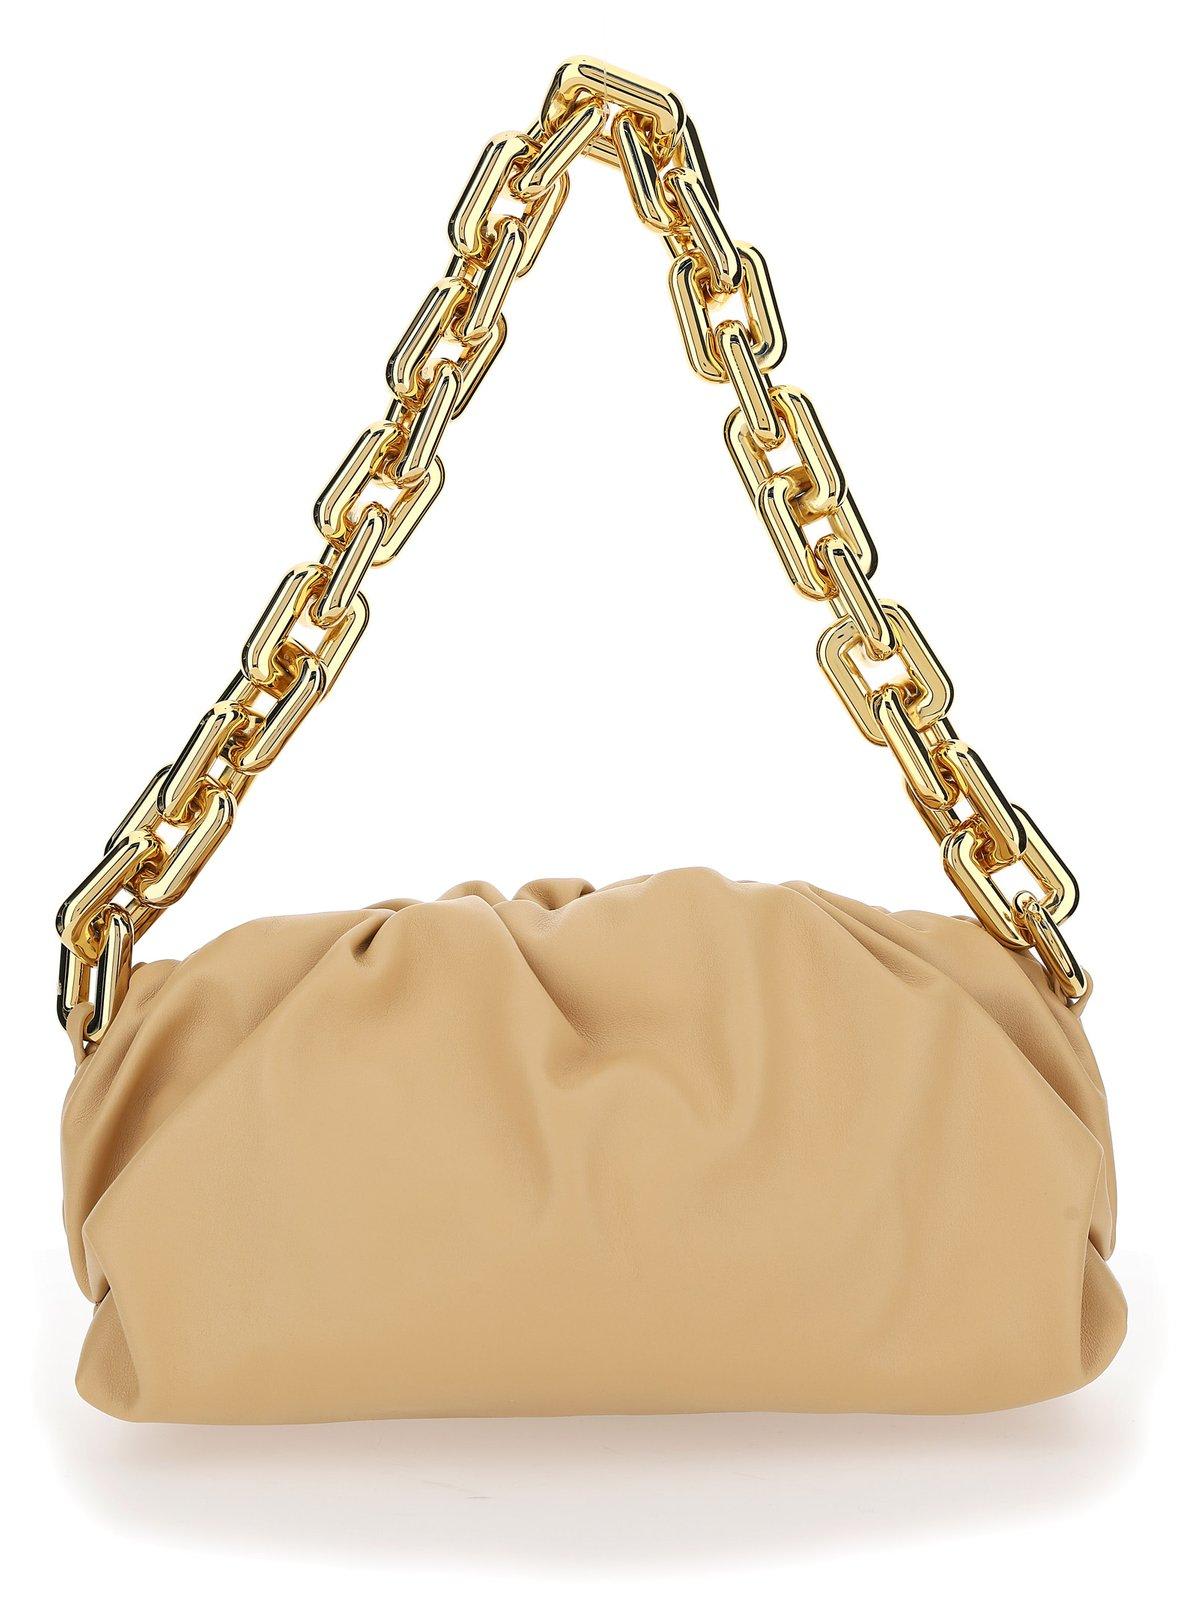 Bottega Veneta The Chain Shoulder Bag